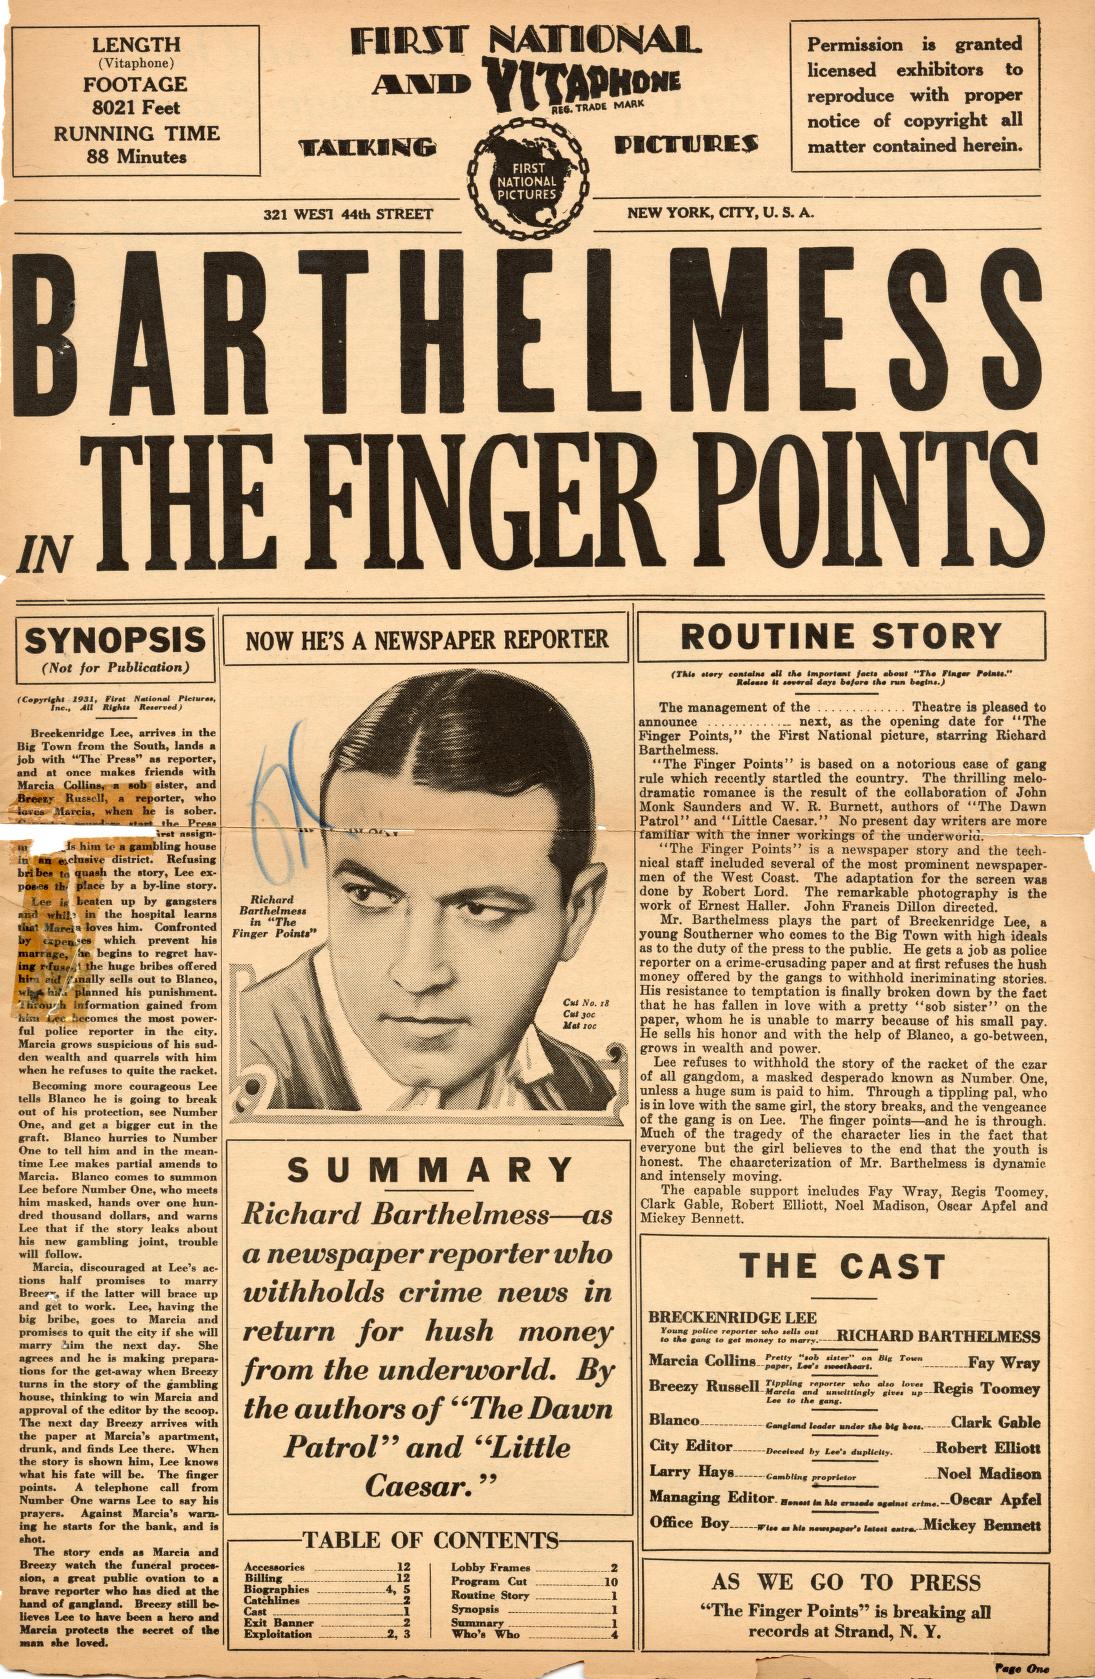 The Finger Points (Warner Bros.)